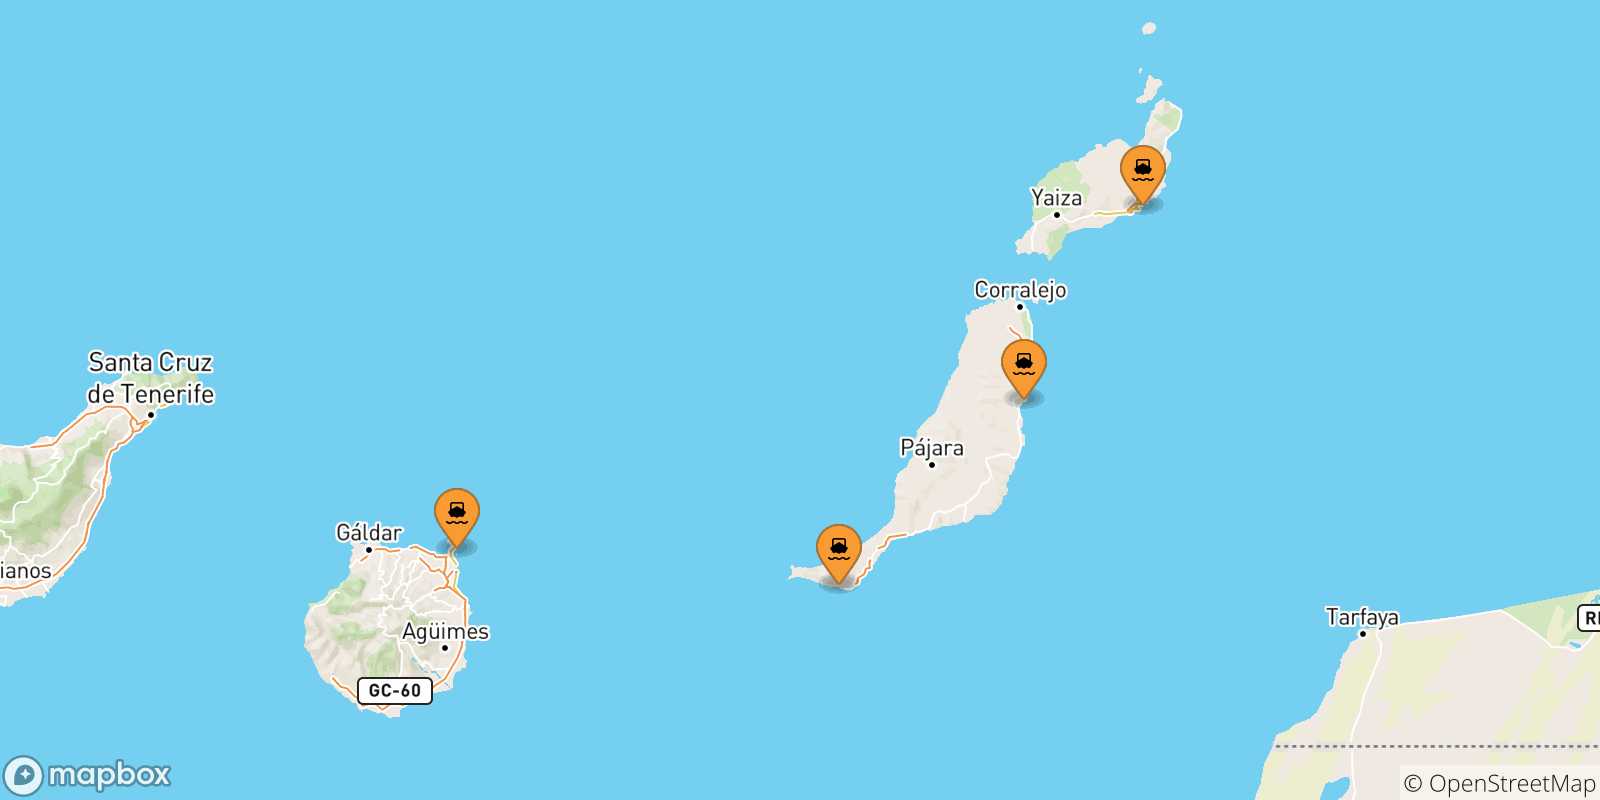 Mappa delle possibili rotte tra le Isole Canarie e Santa Cruz De Tenerife